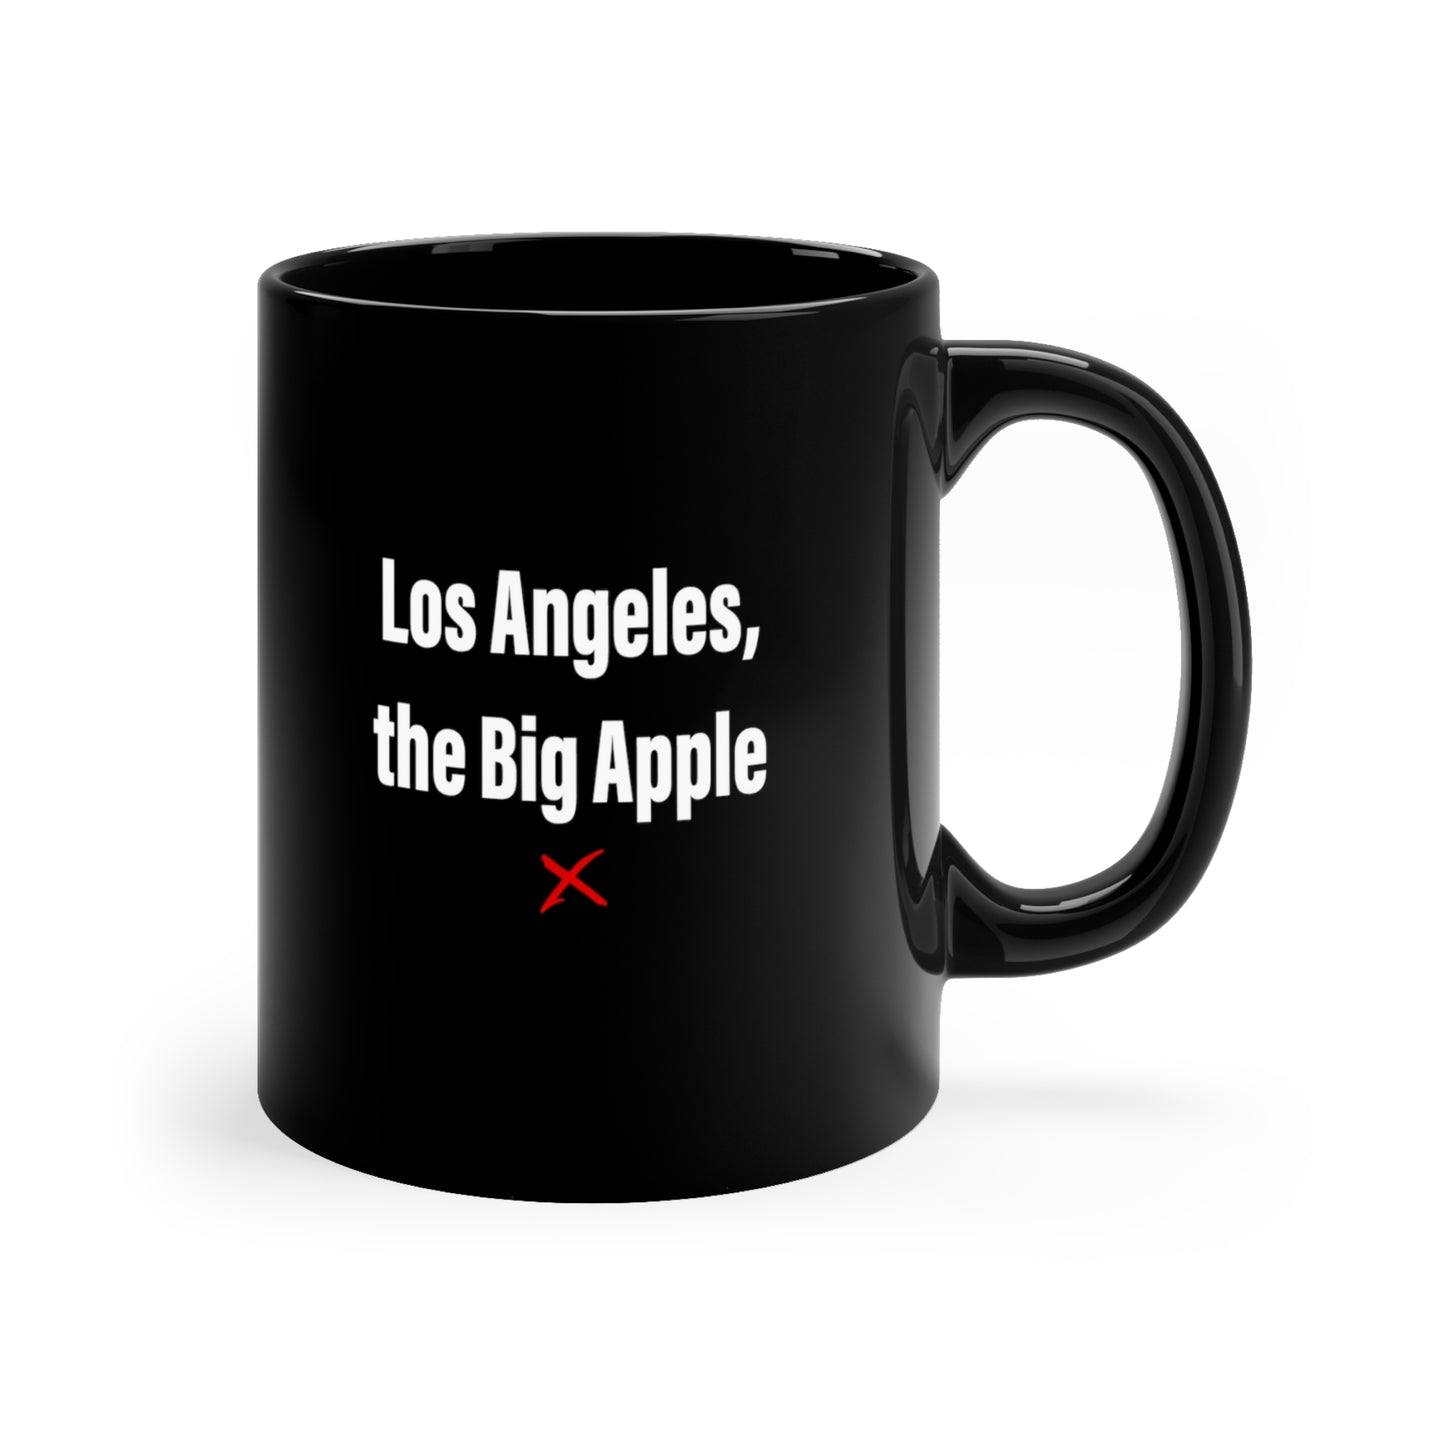 Los Angeles, the Big Apple - Mug